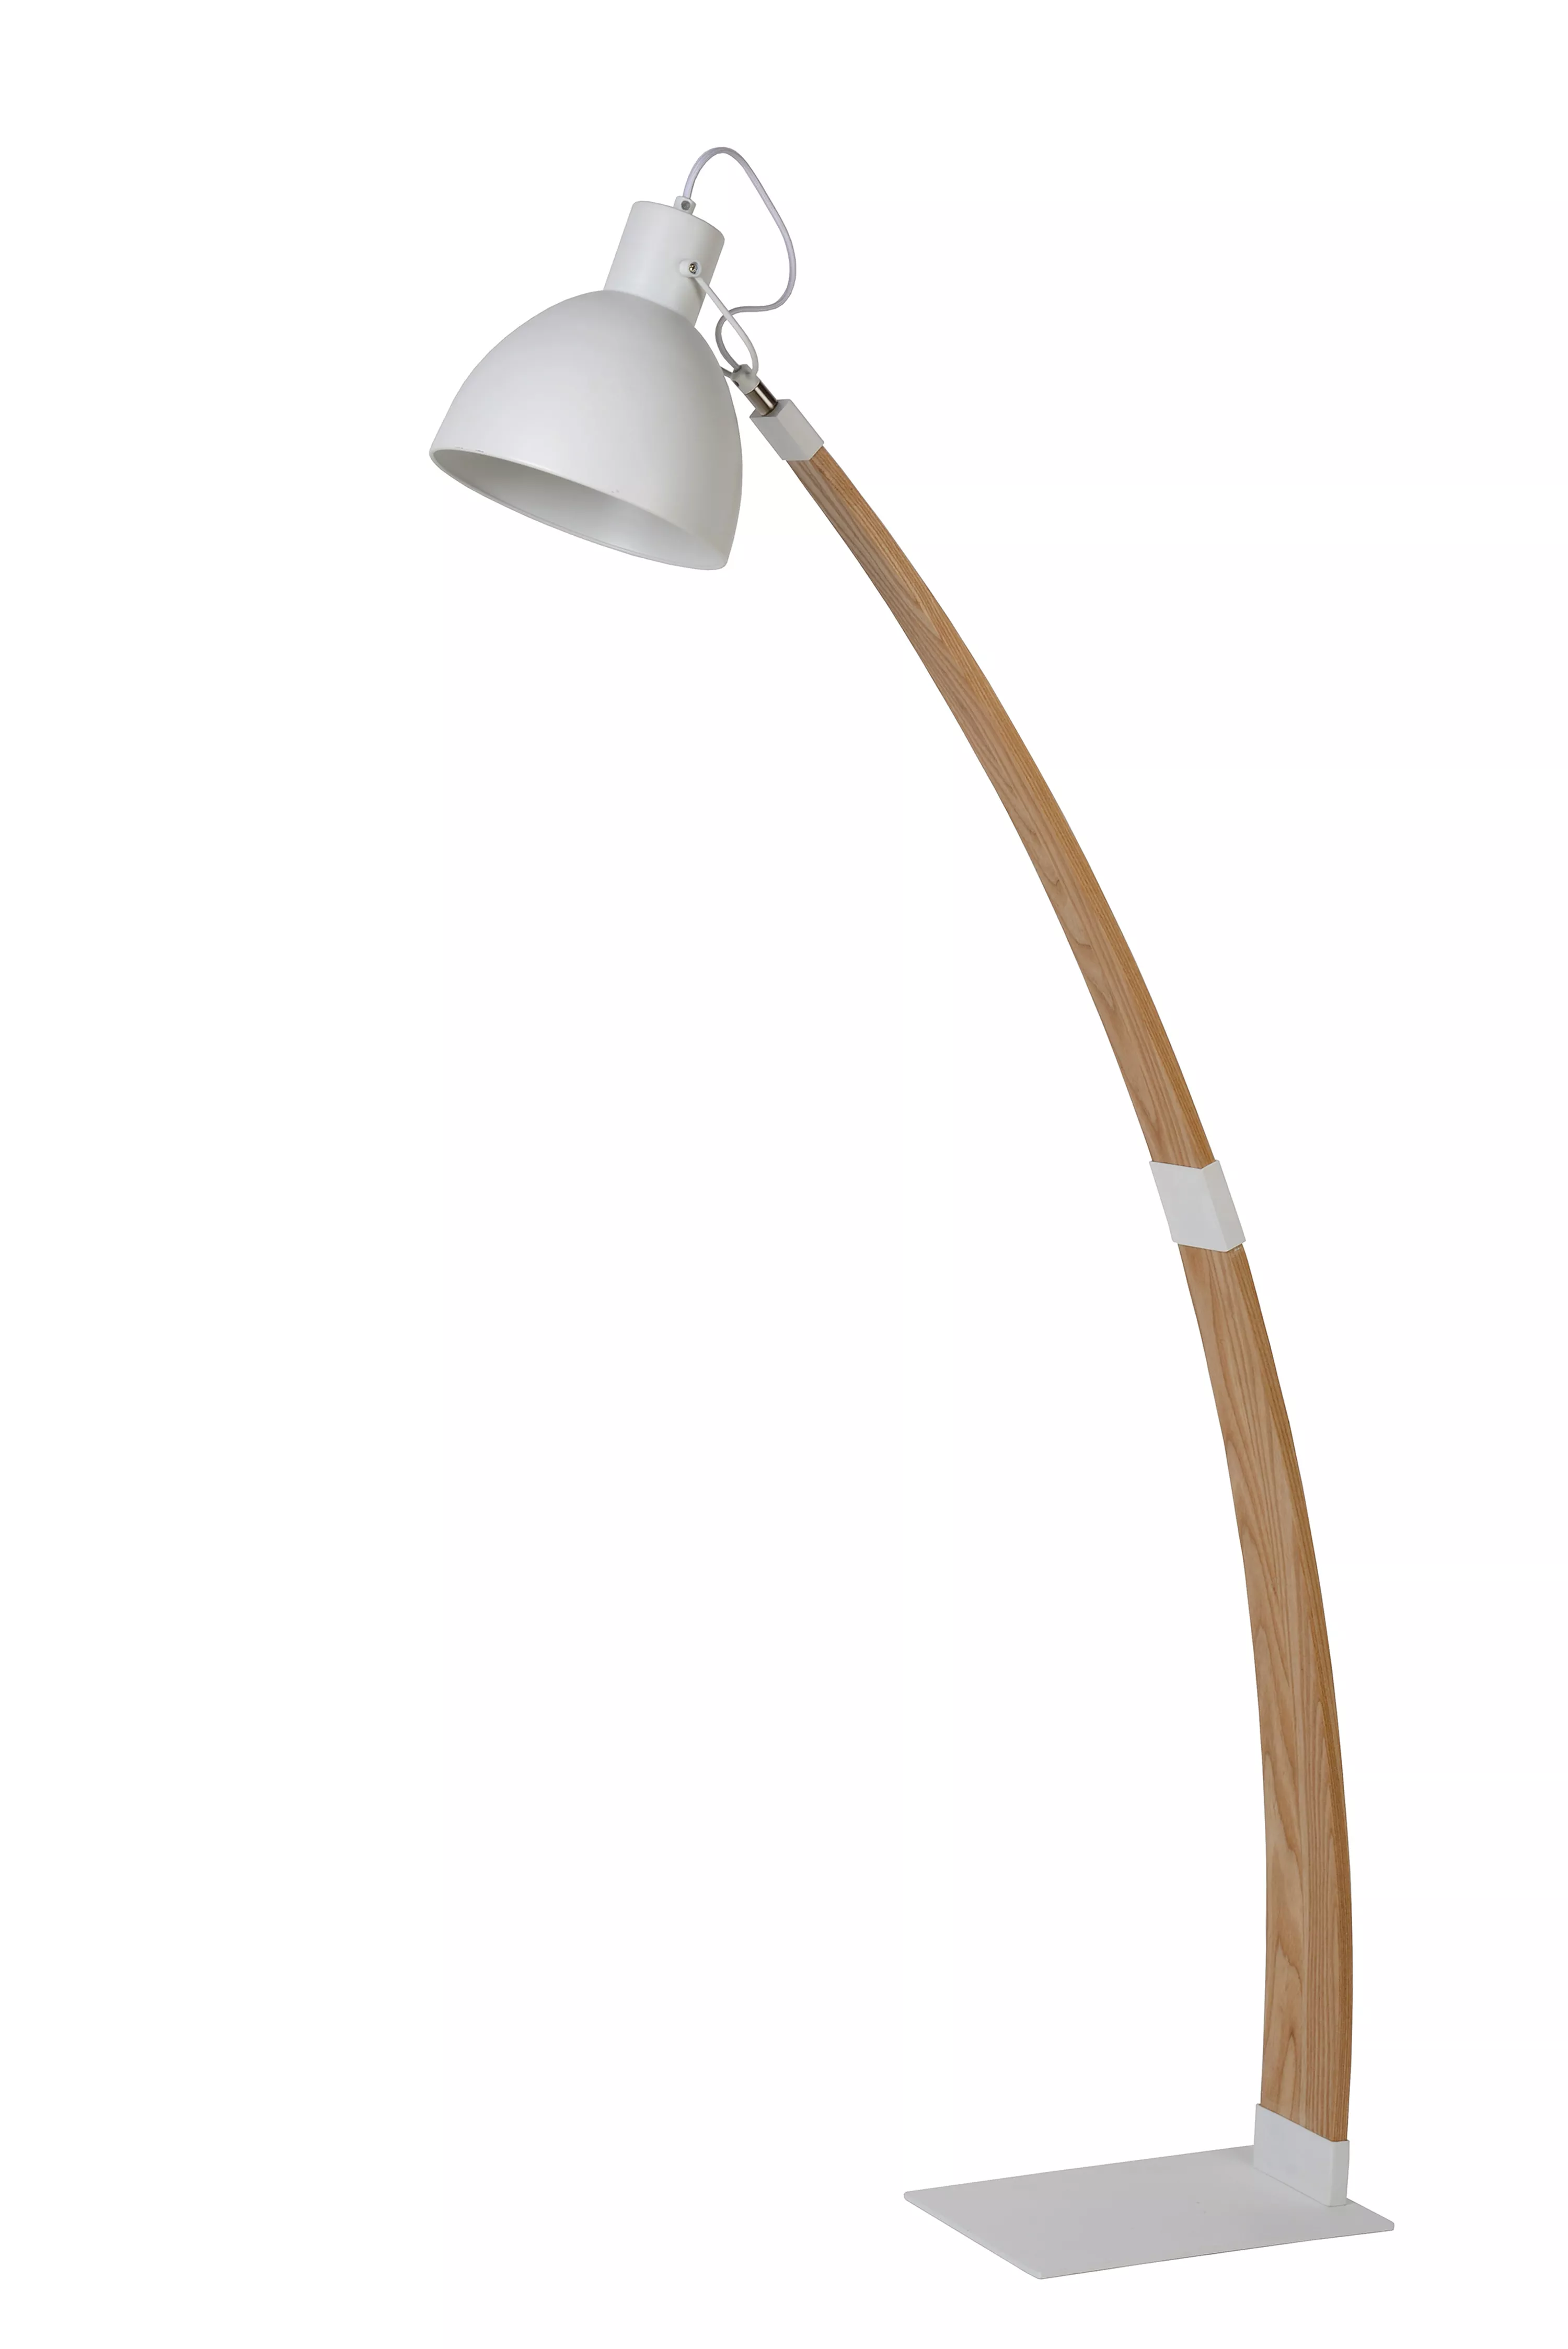 Stojací lampa Curf v kombinaci dřeva a bílé barvy se hodí do minimalistického interiéru, snadno směrovatelná kam potřebujete.